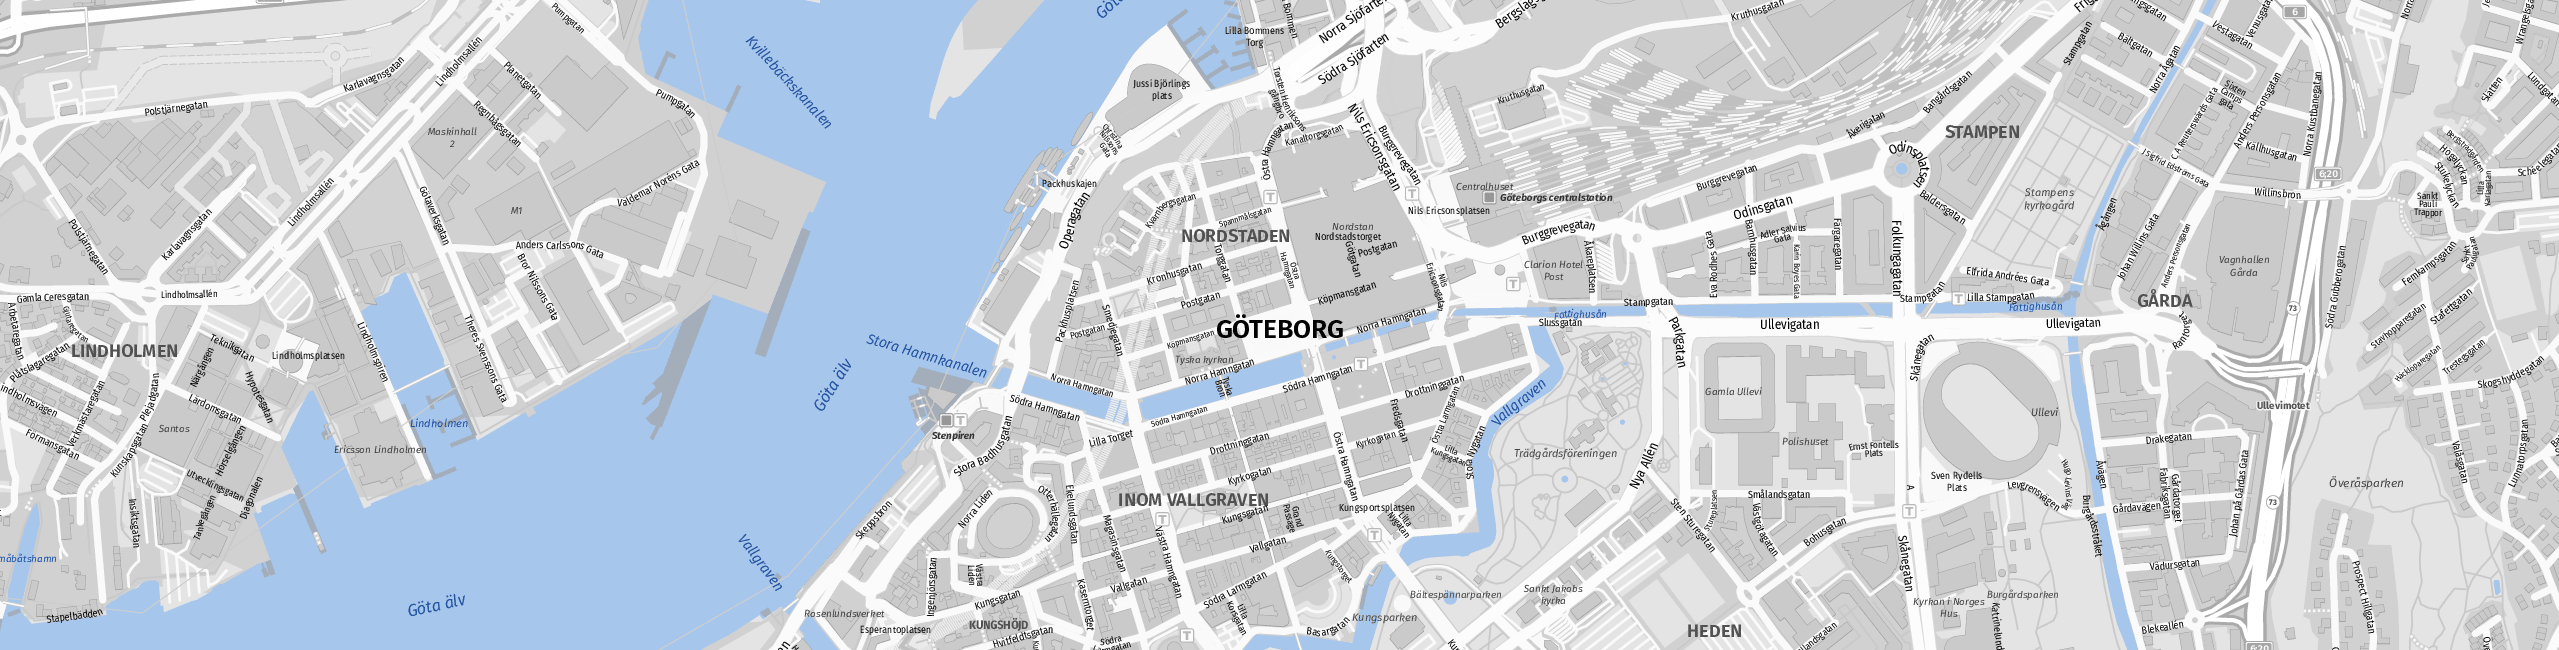 Stadtplan Göteborg zum Downloaden.